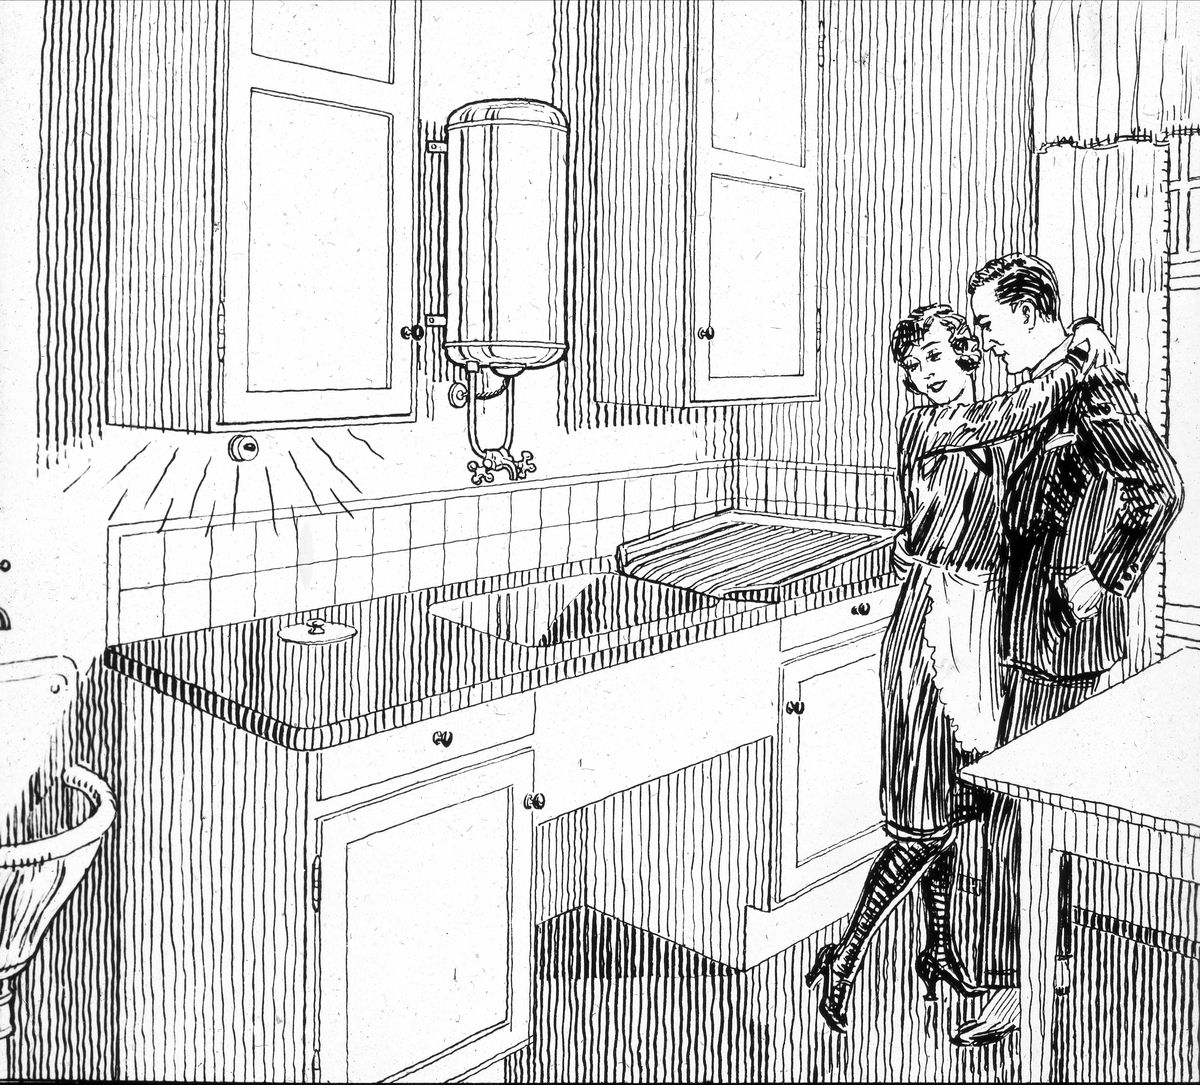 Tegning av ektepar hvor kvinnen omfavner mannen, foran ny kjøkkenbenk med elektrisk lys.